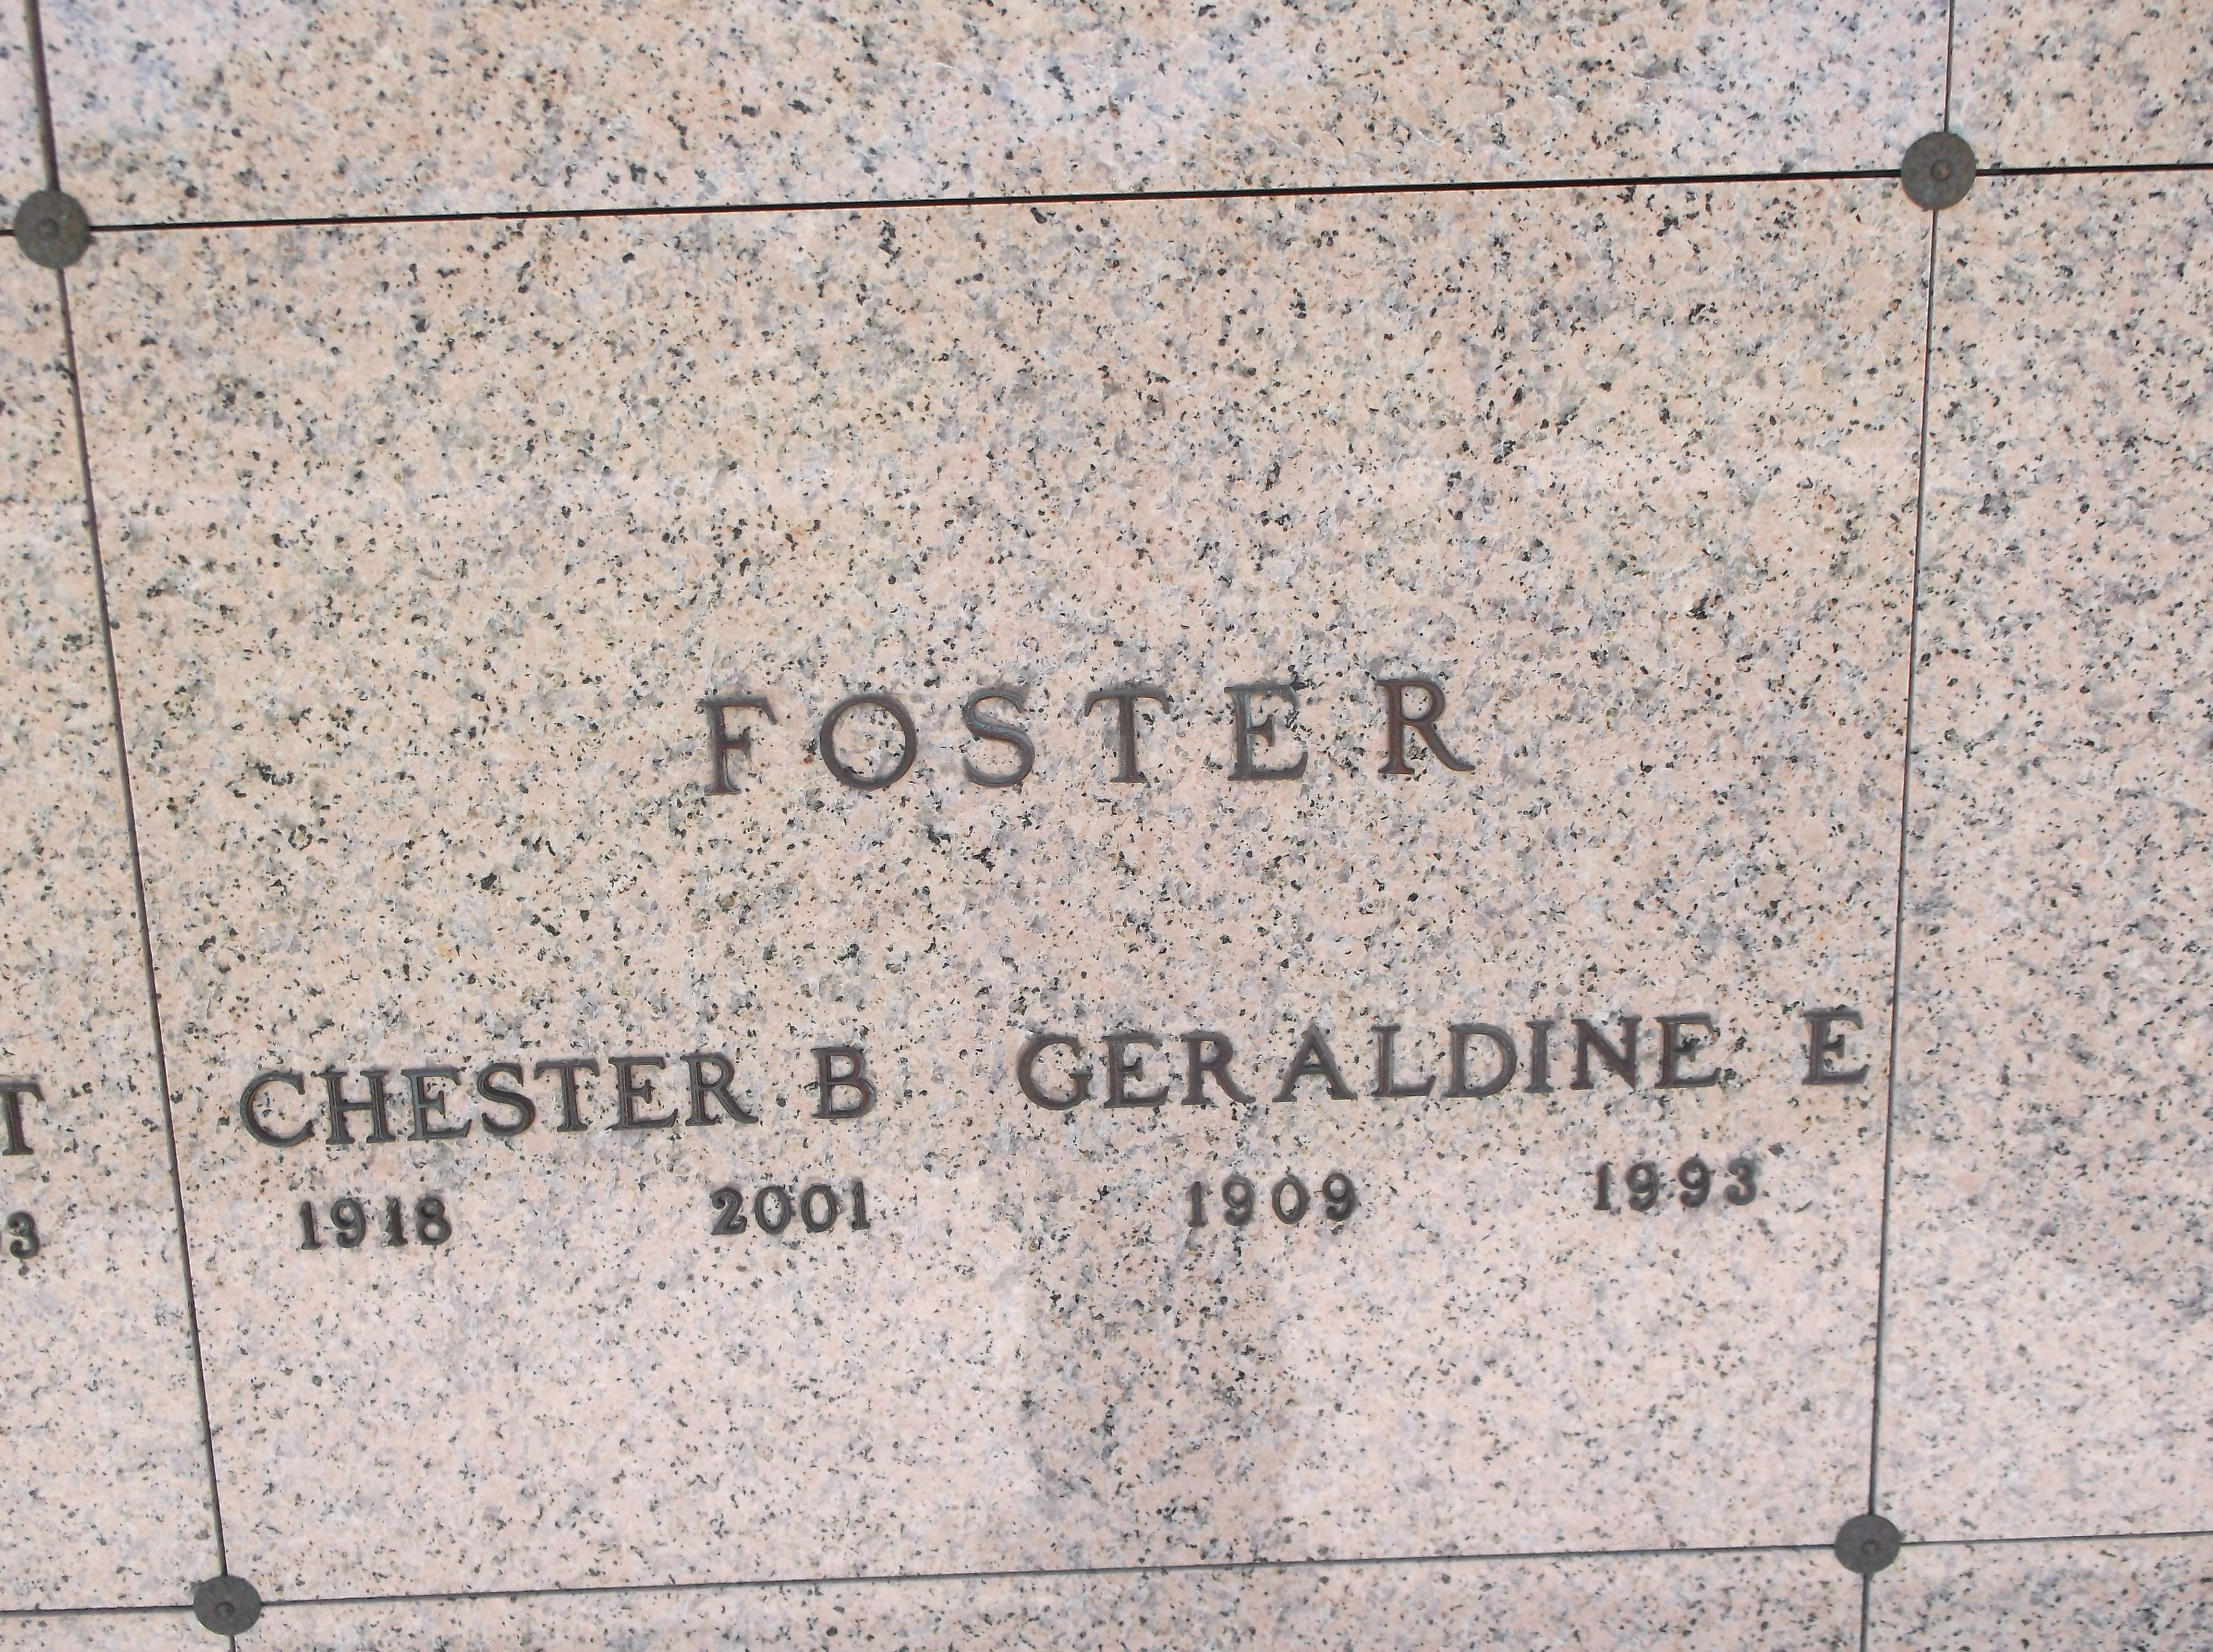 Geraldine E Foster